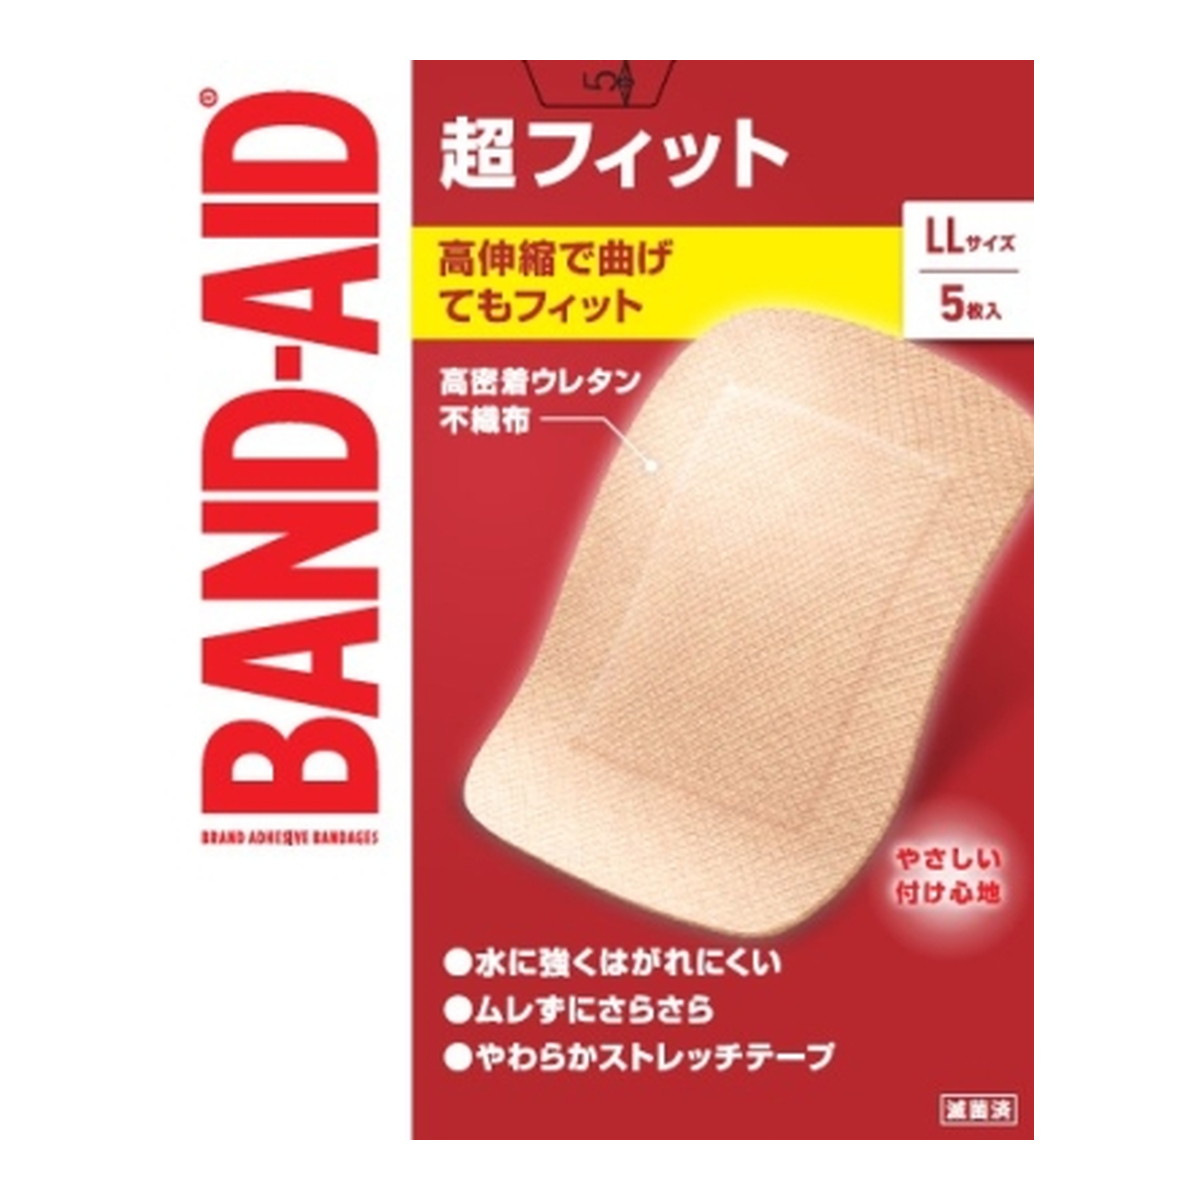 BANDーAID Kenvue バンドエイド 超フィット LLサイズ 5枚入×10個 絆創膏の商品画像